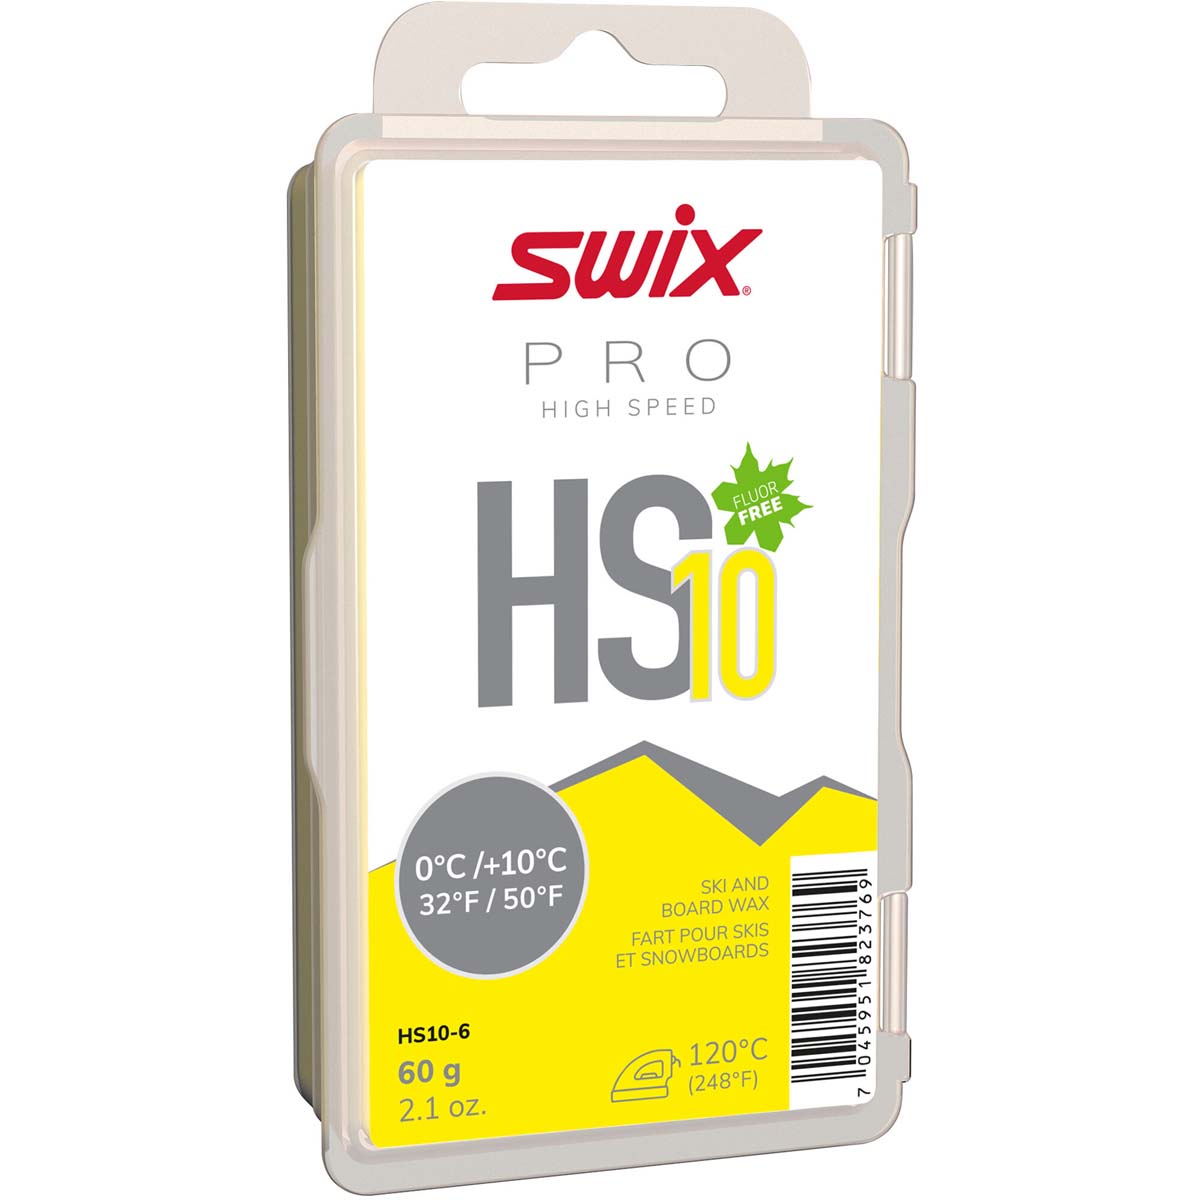 Skluzný vosk Swix High Speed, HS10 žlutý 0/+10°C,60g